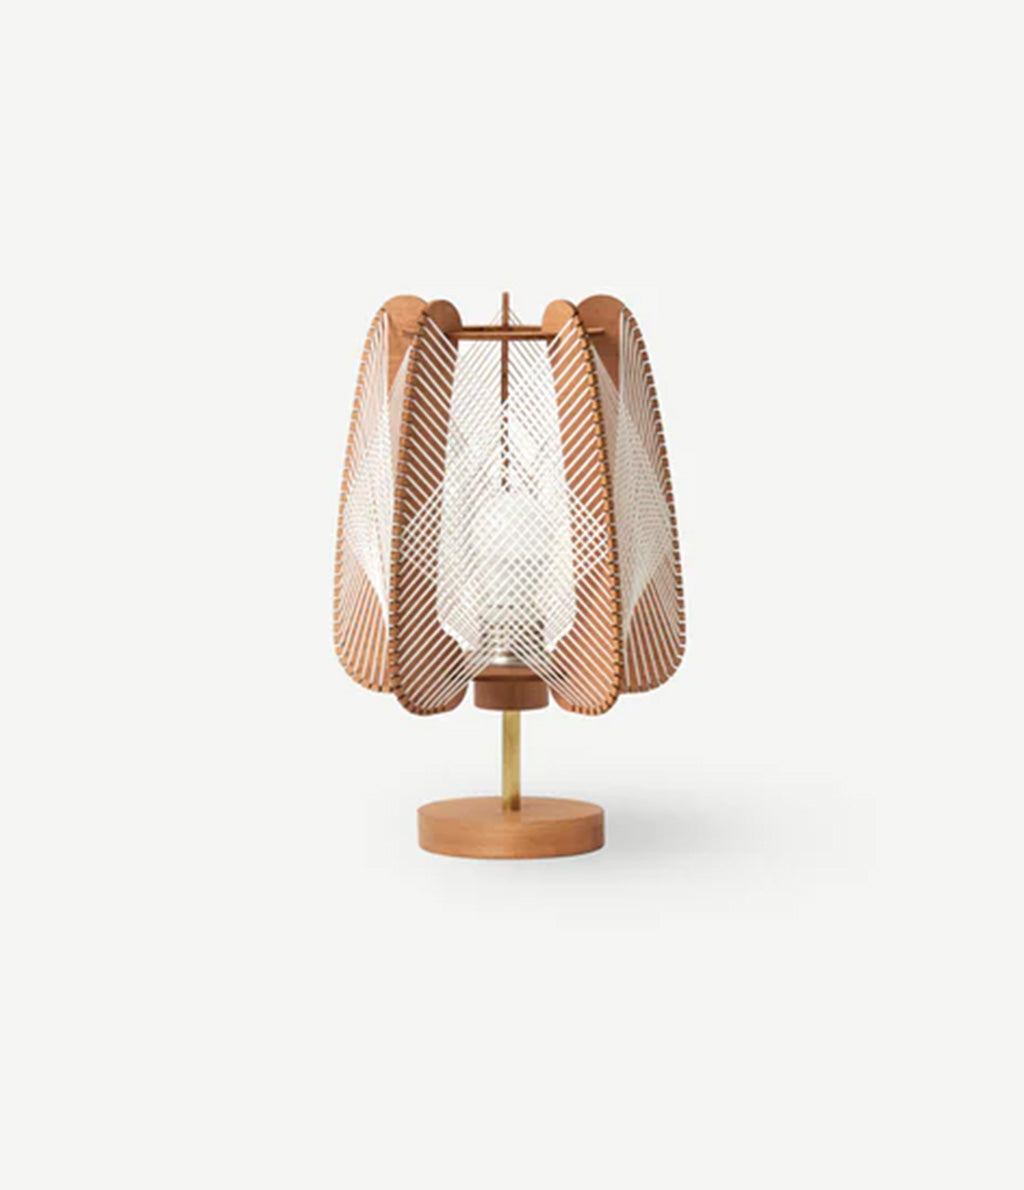 LAFABLIGHT "ARIOCA - TABLE LAMP" (QADRO CROISE)